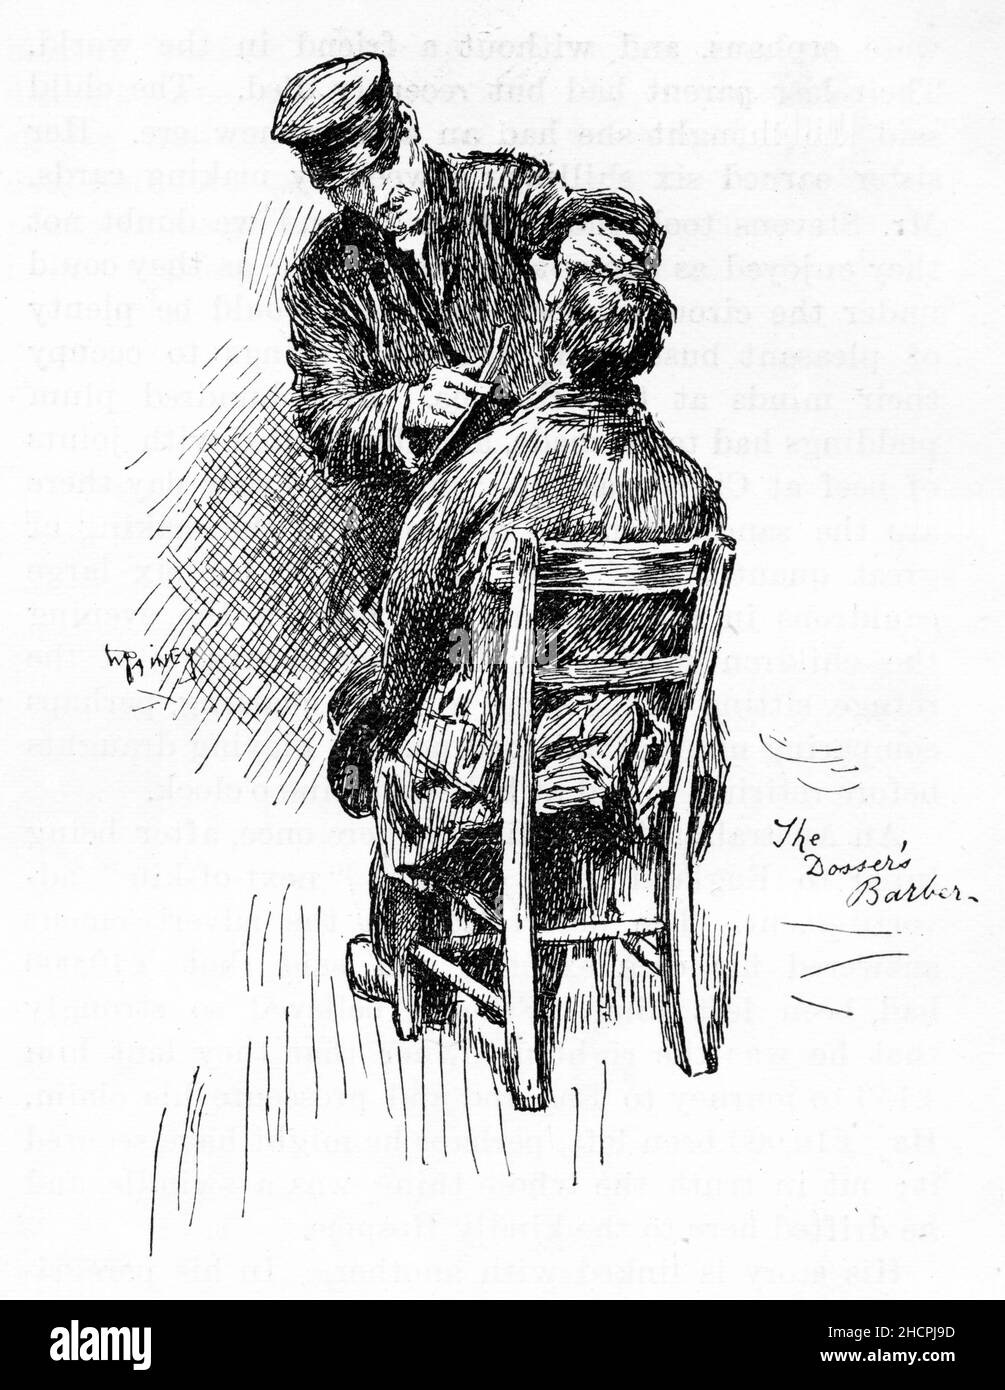 Gravure d'un homme obtenant une coupe de cheveux, publié en 1892 Banque D'Images